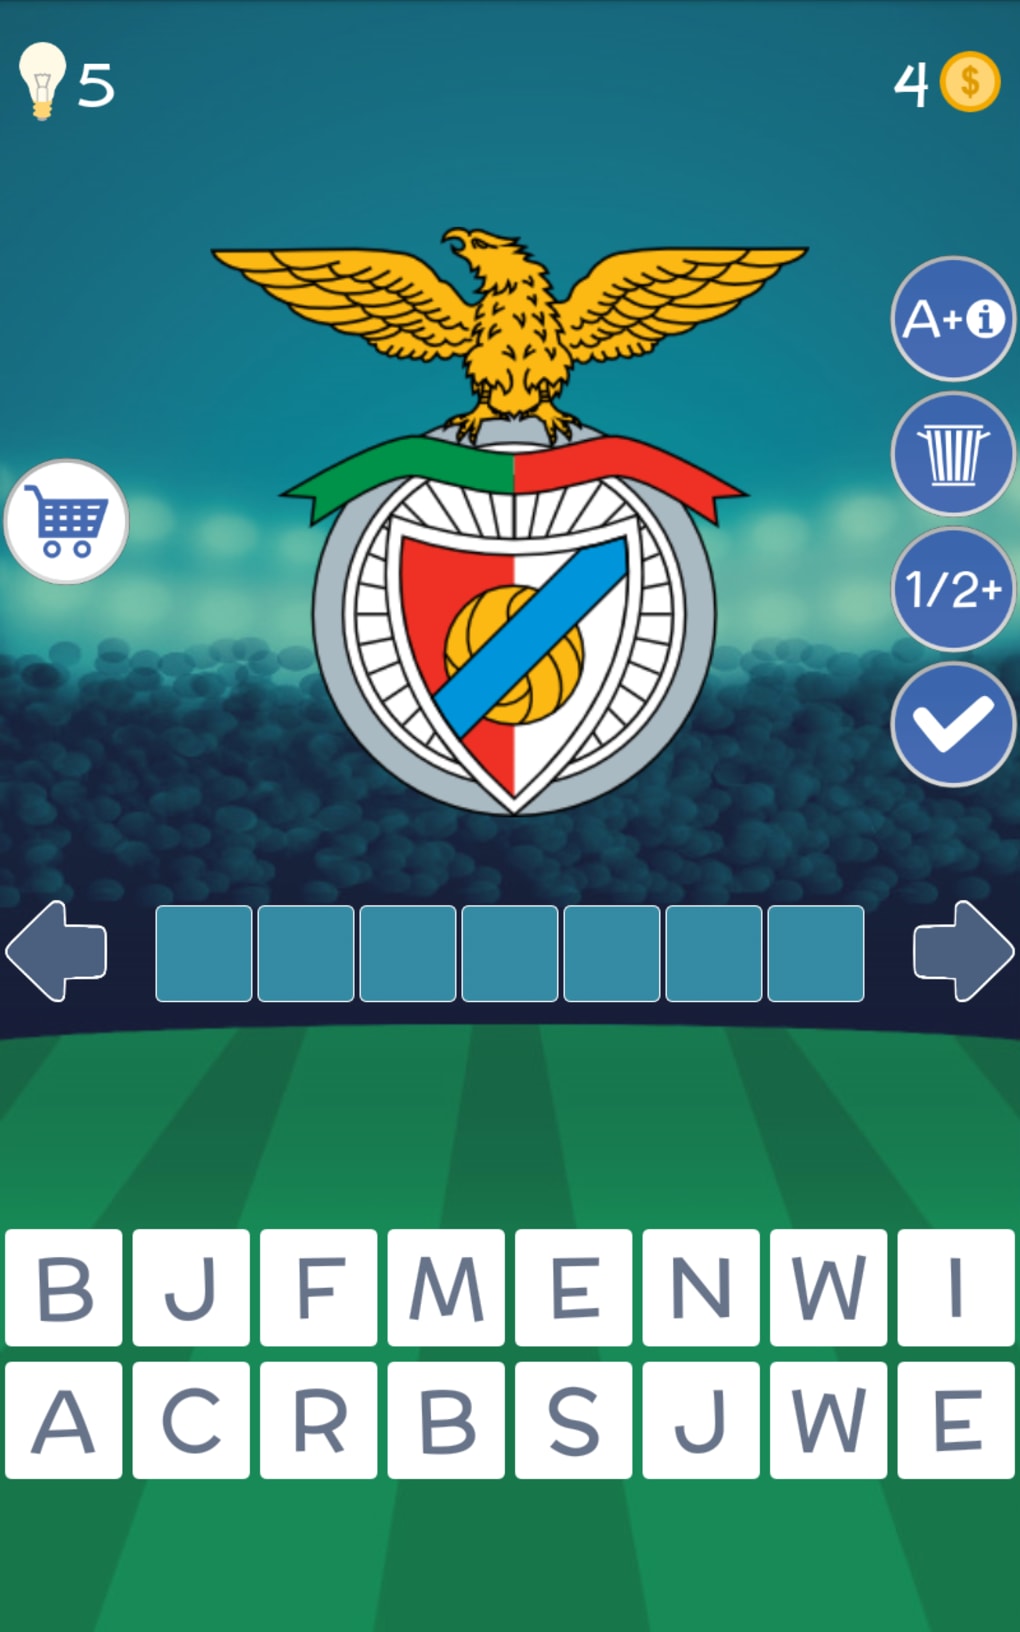 Quiz Futebol brasileiro, Desafio 4: Teste Seu Conhecimento 